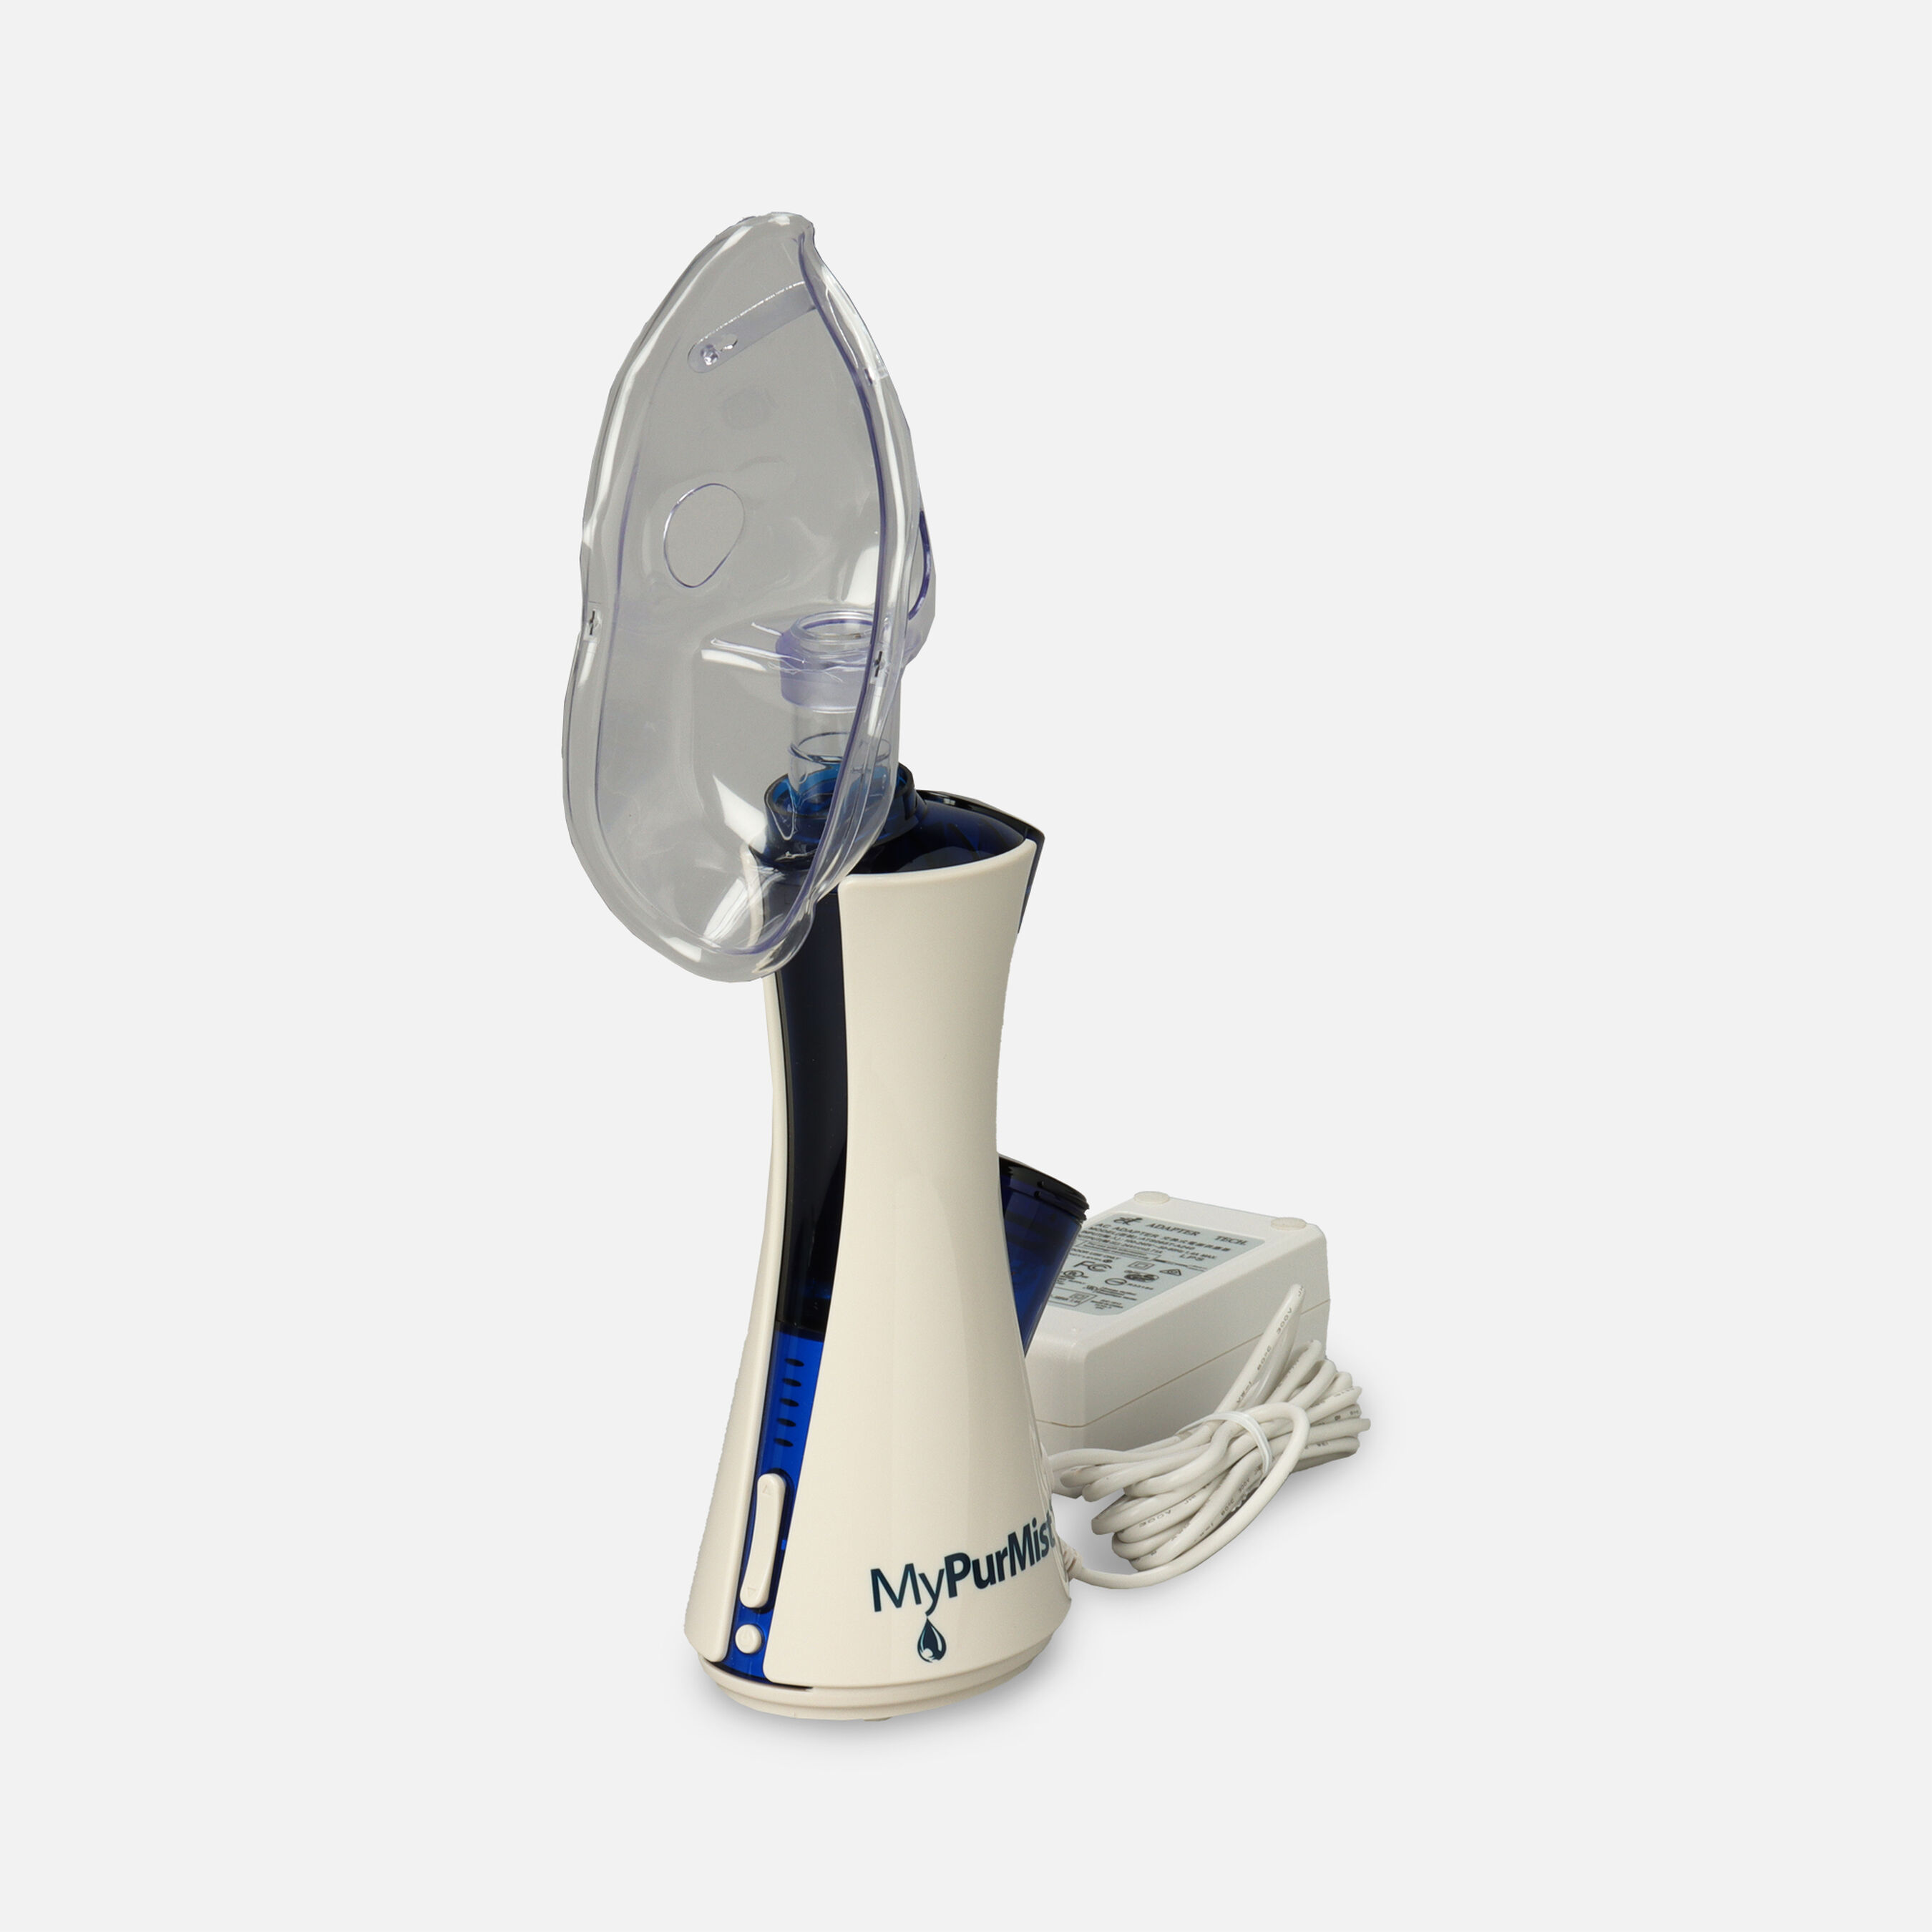 mypurmist handheld steam inhaler